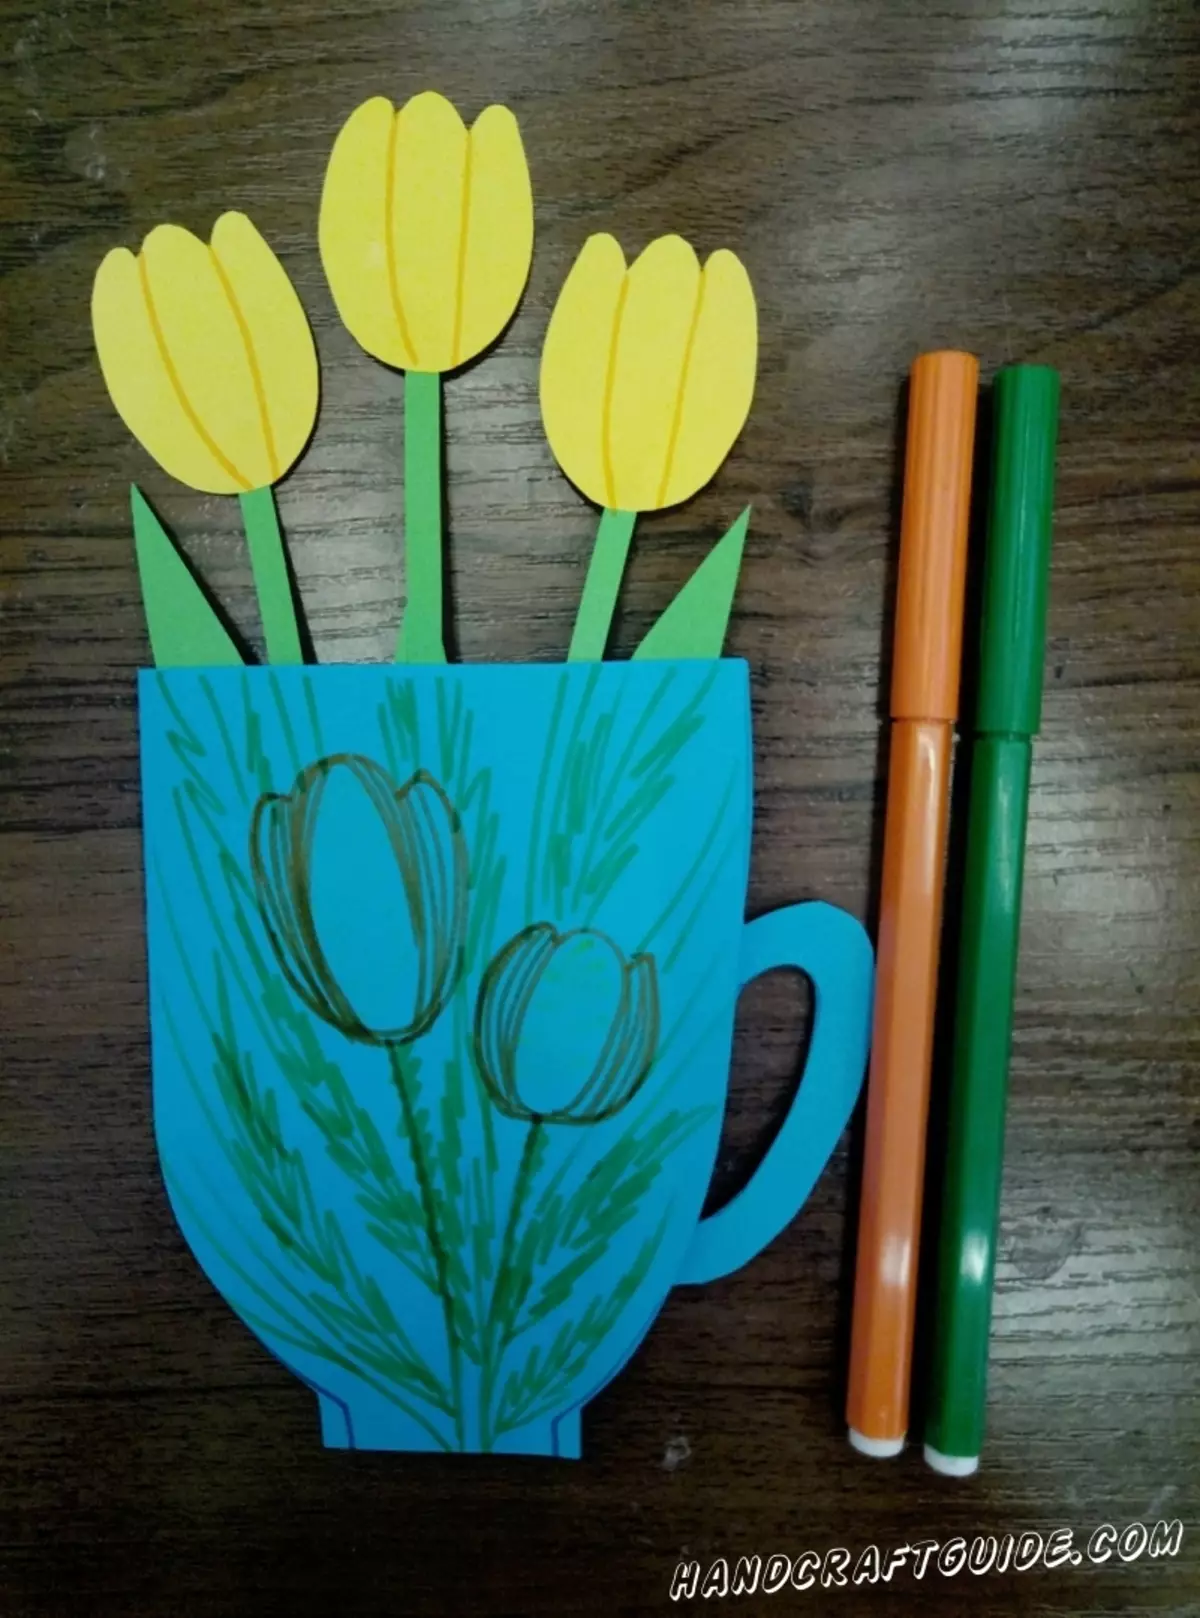 تعلیم کے دن کے لئے اپلی کیشن (15 فوٹو): اپنے ہاتھوں سے کاغذ سے پھول بنانے کے لئے کس طرح؟ ایک پوسٹ کارڈ کی شکل اور قدرتی مواد کی تصویر میں درخواست 26358_11